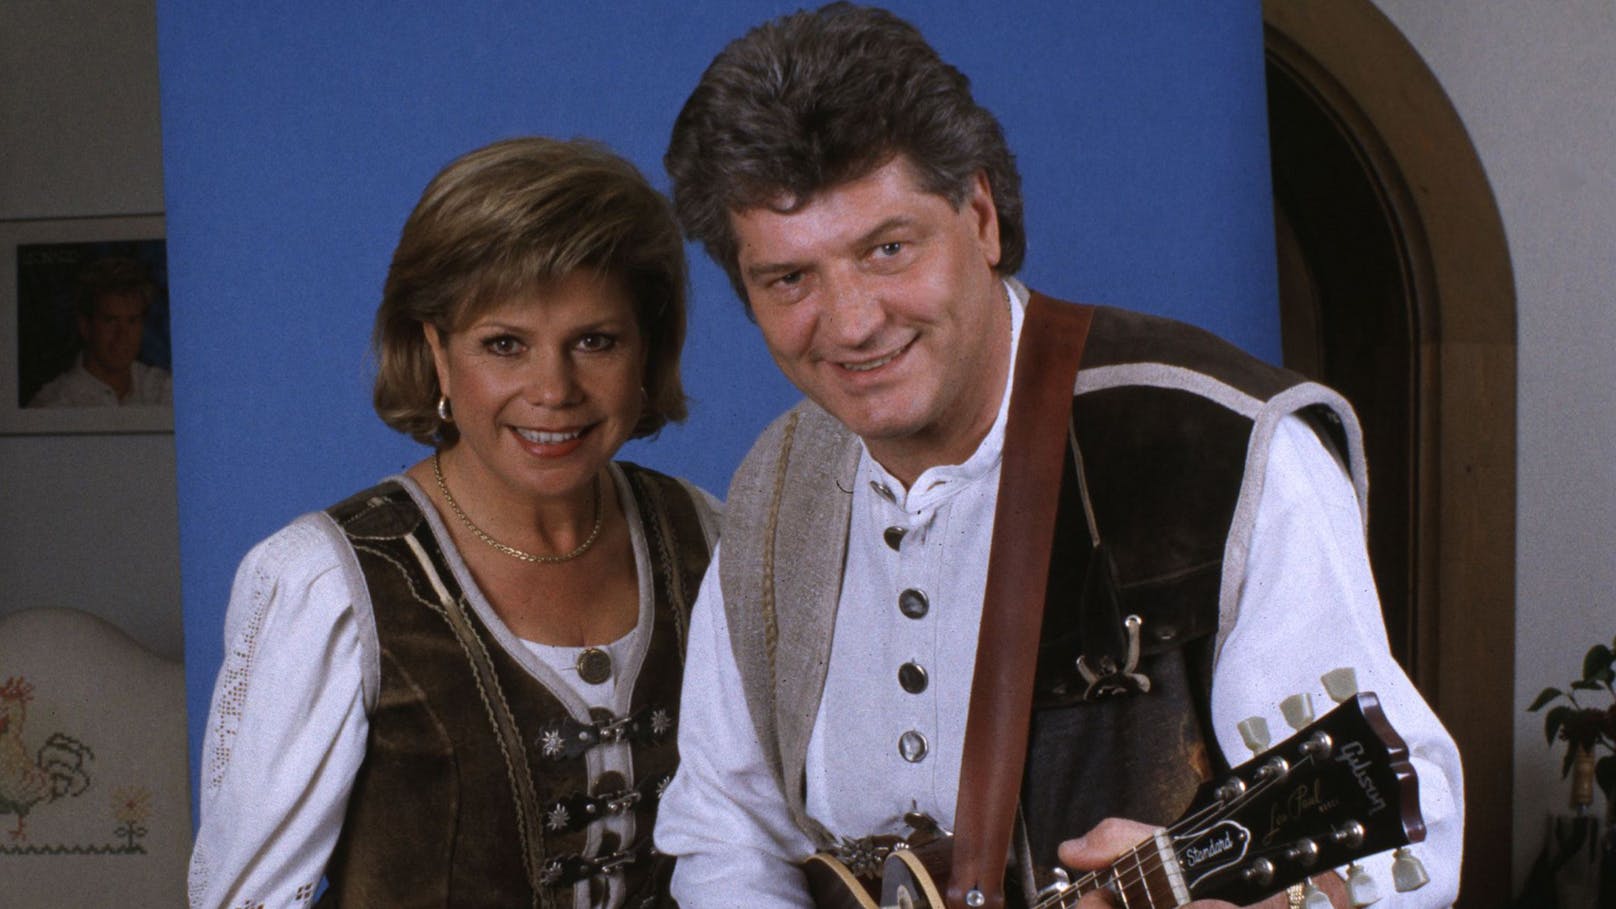 Mit TV-Shows wie der "Superhitparade der Volksmusik", "Heimatmelodie" oder "Weihnachten mit Marianne und Michael" feierten sie zwischen 1989 und 2011 große Erfolge.